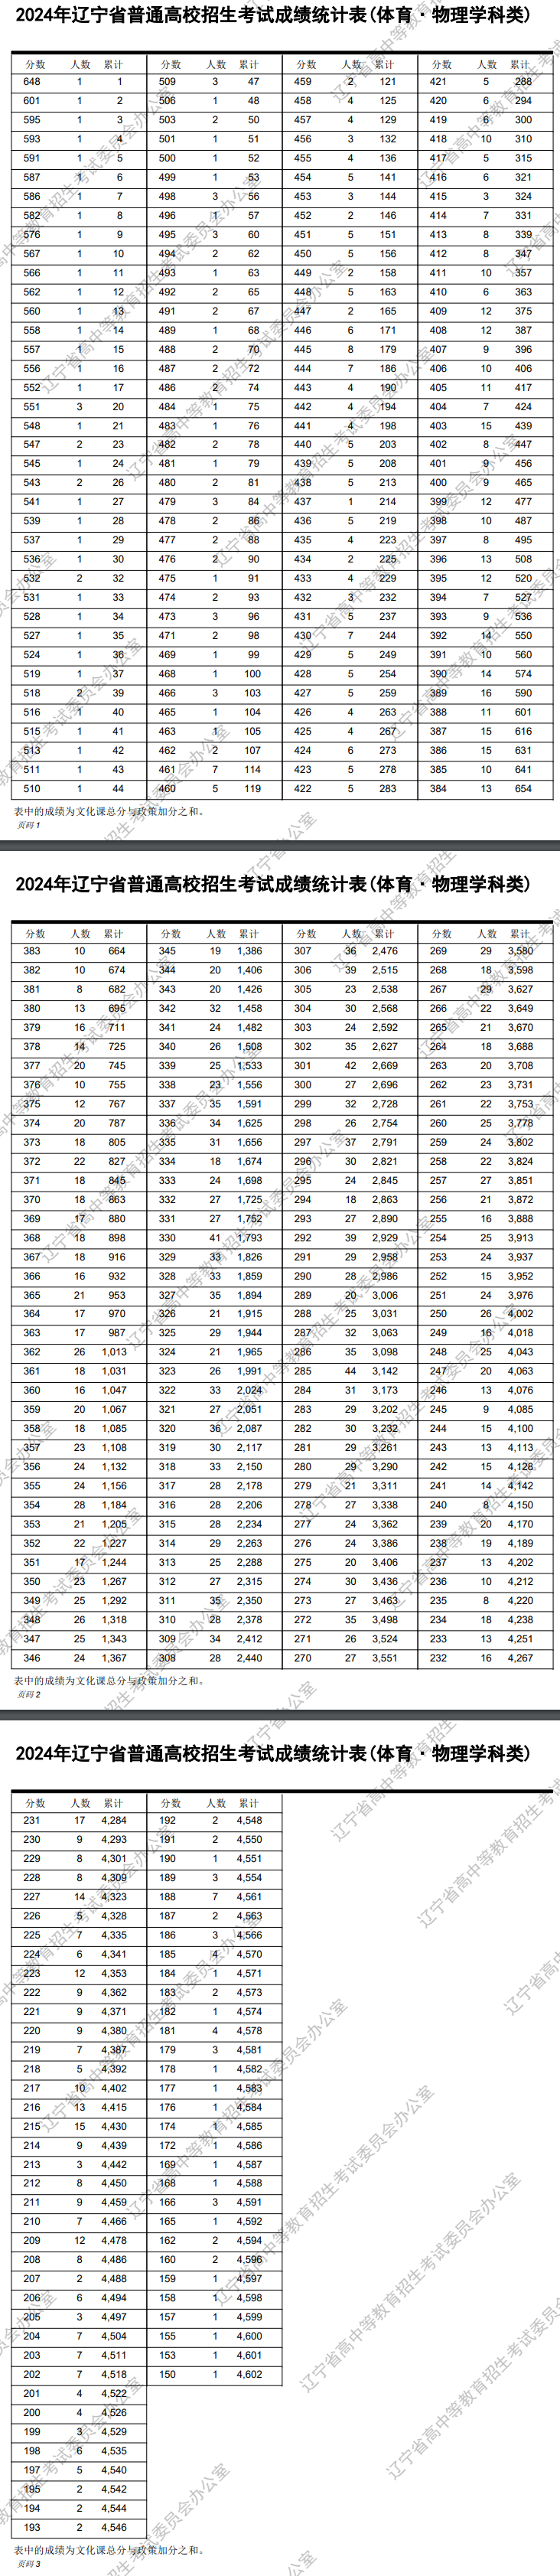 2024辽宁高考体育类一分一段表公布 成绩排名汇总【完整版】